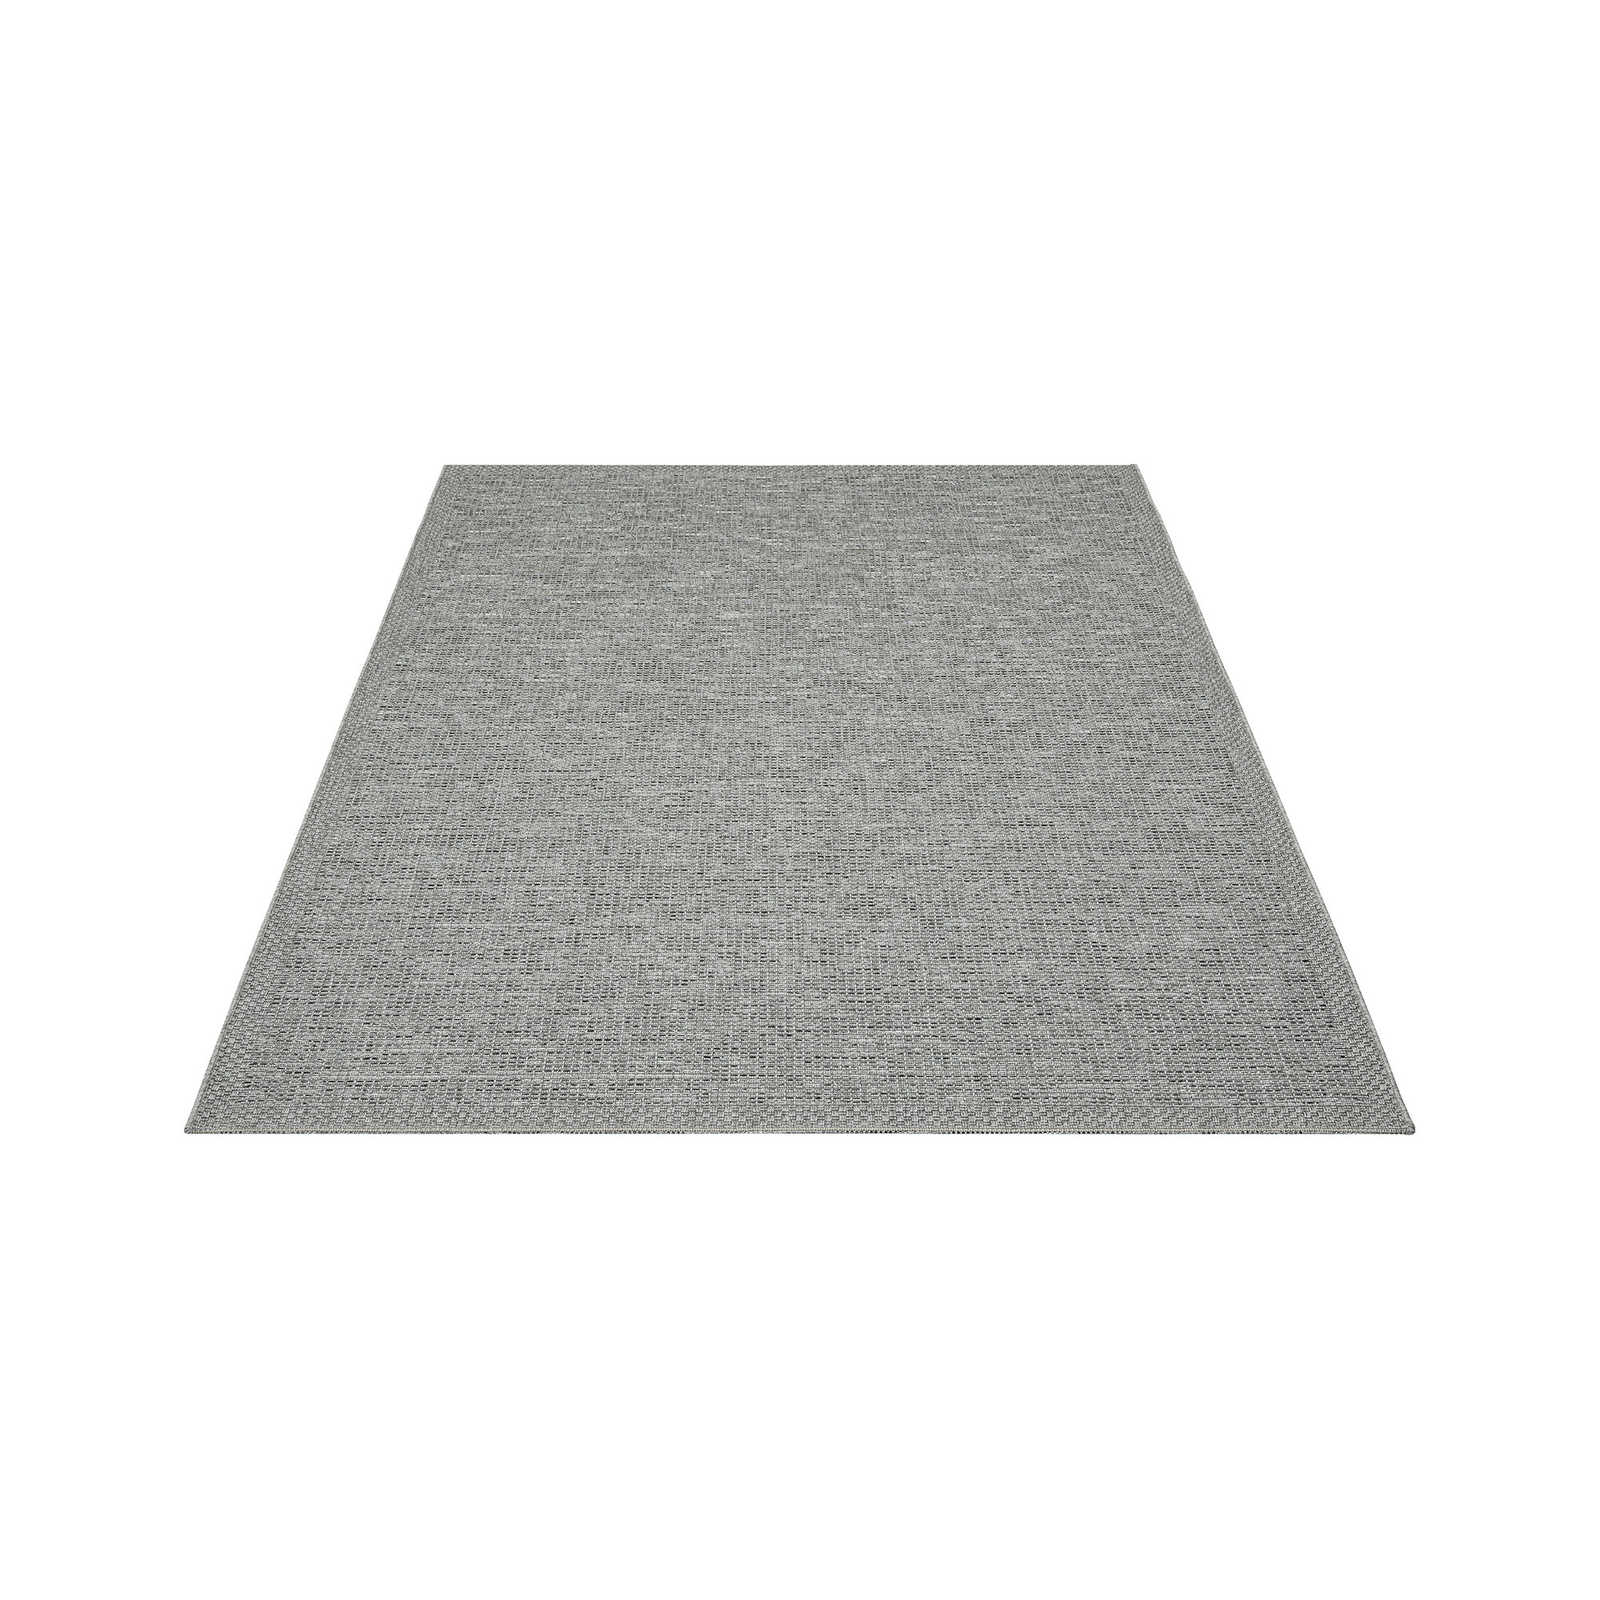 Tappeto da esterno liscio in grigio - 220 x 160 cm
